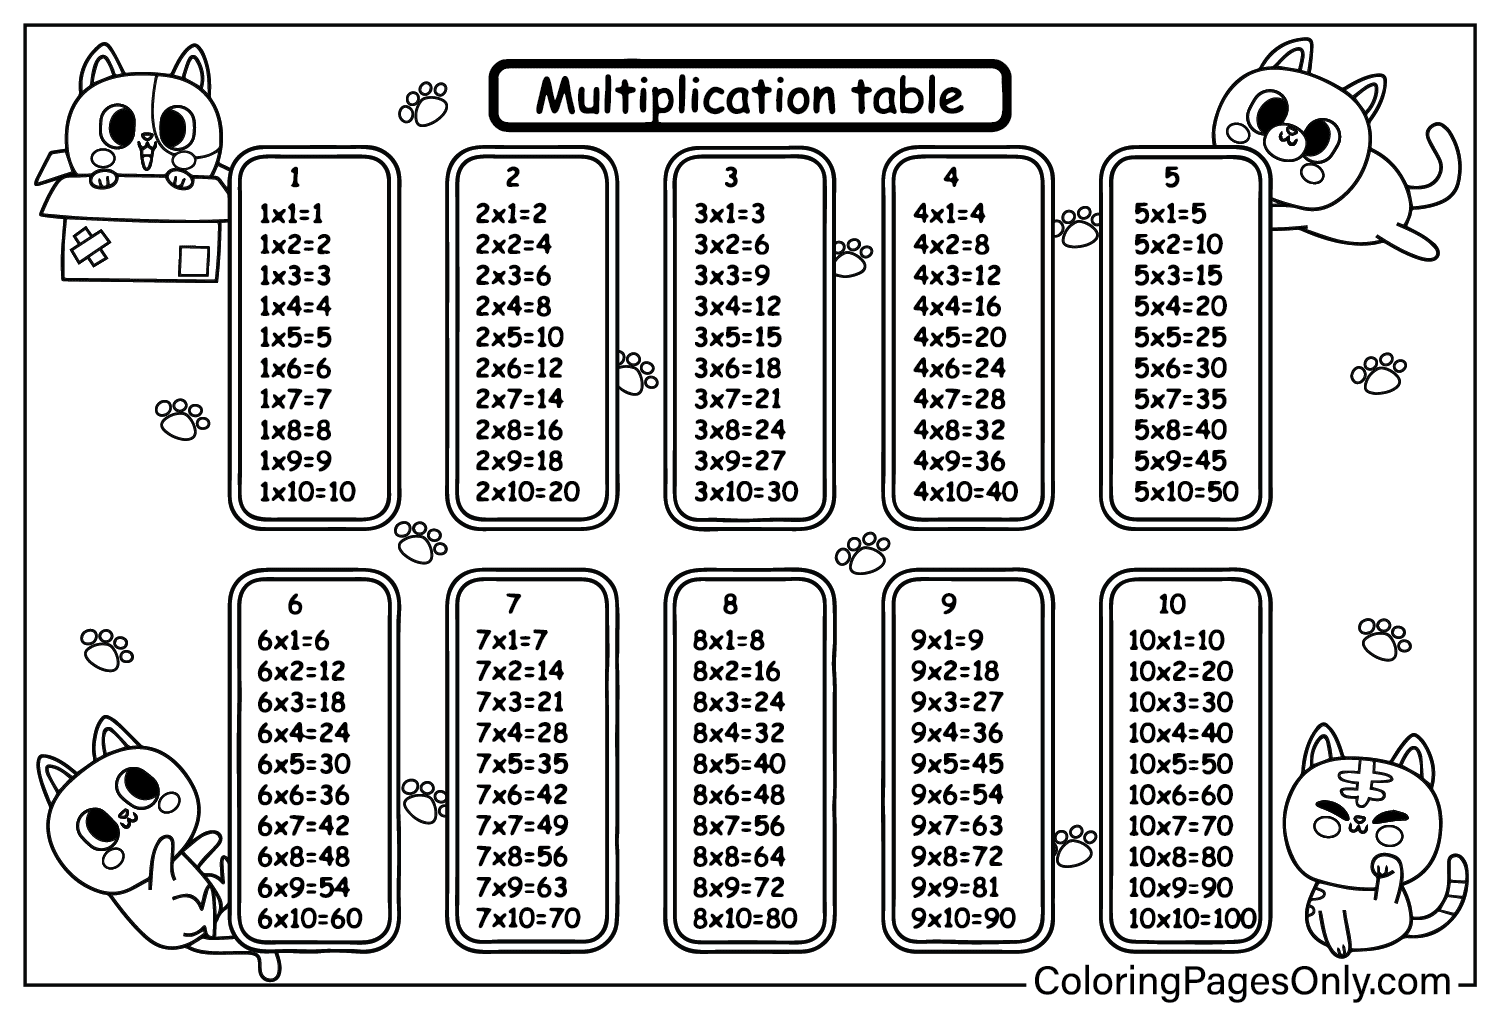 Couleur de multiplication imprimable gratuite à partir du tableau de multiplication